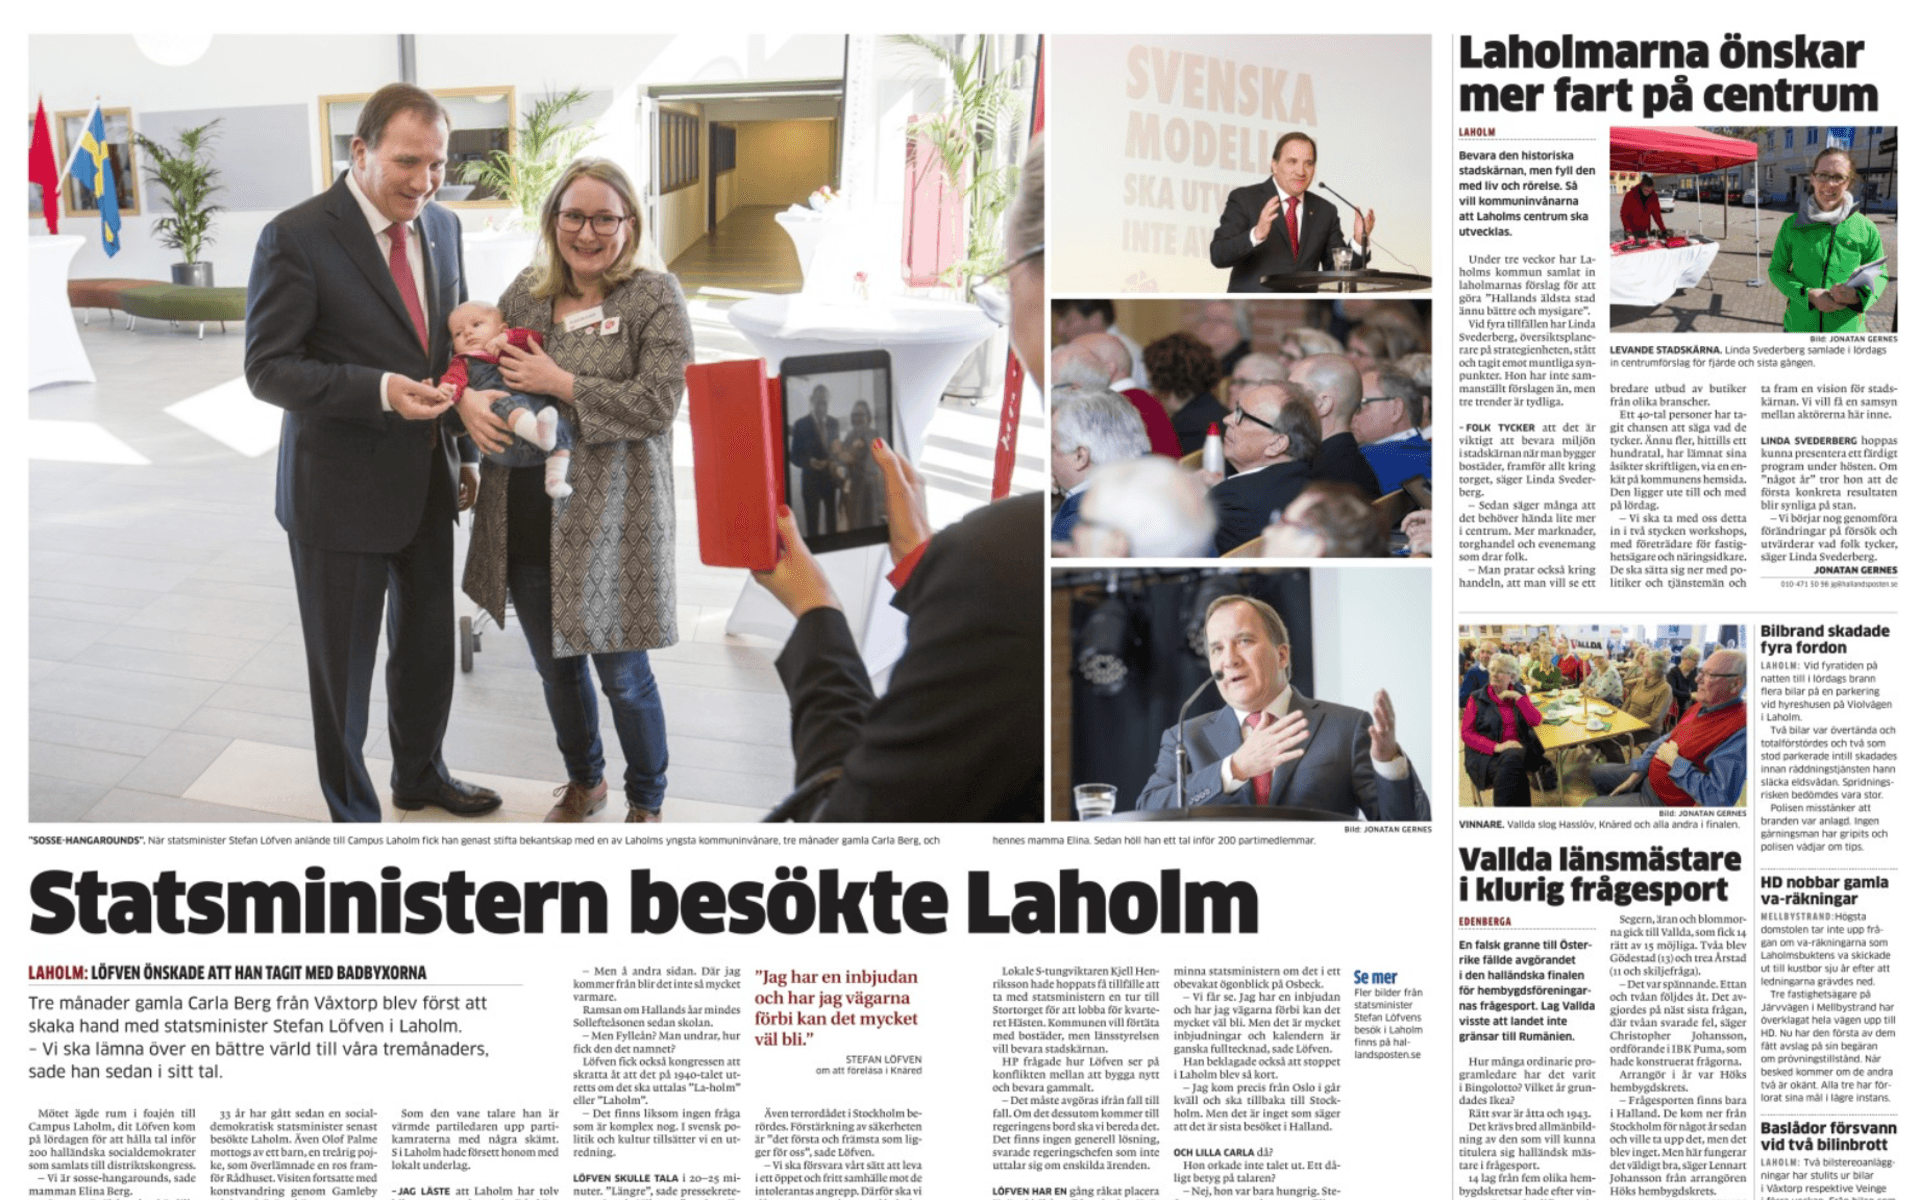 ... Och så hade Stefan Löfven besökt Laholm. 